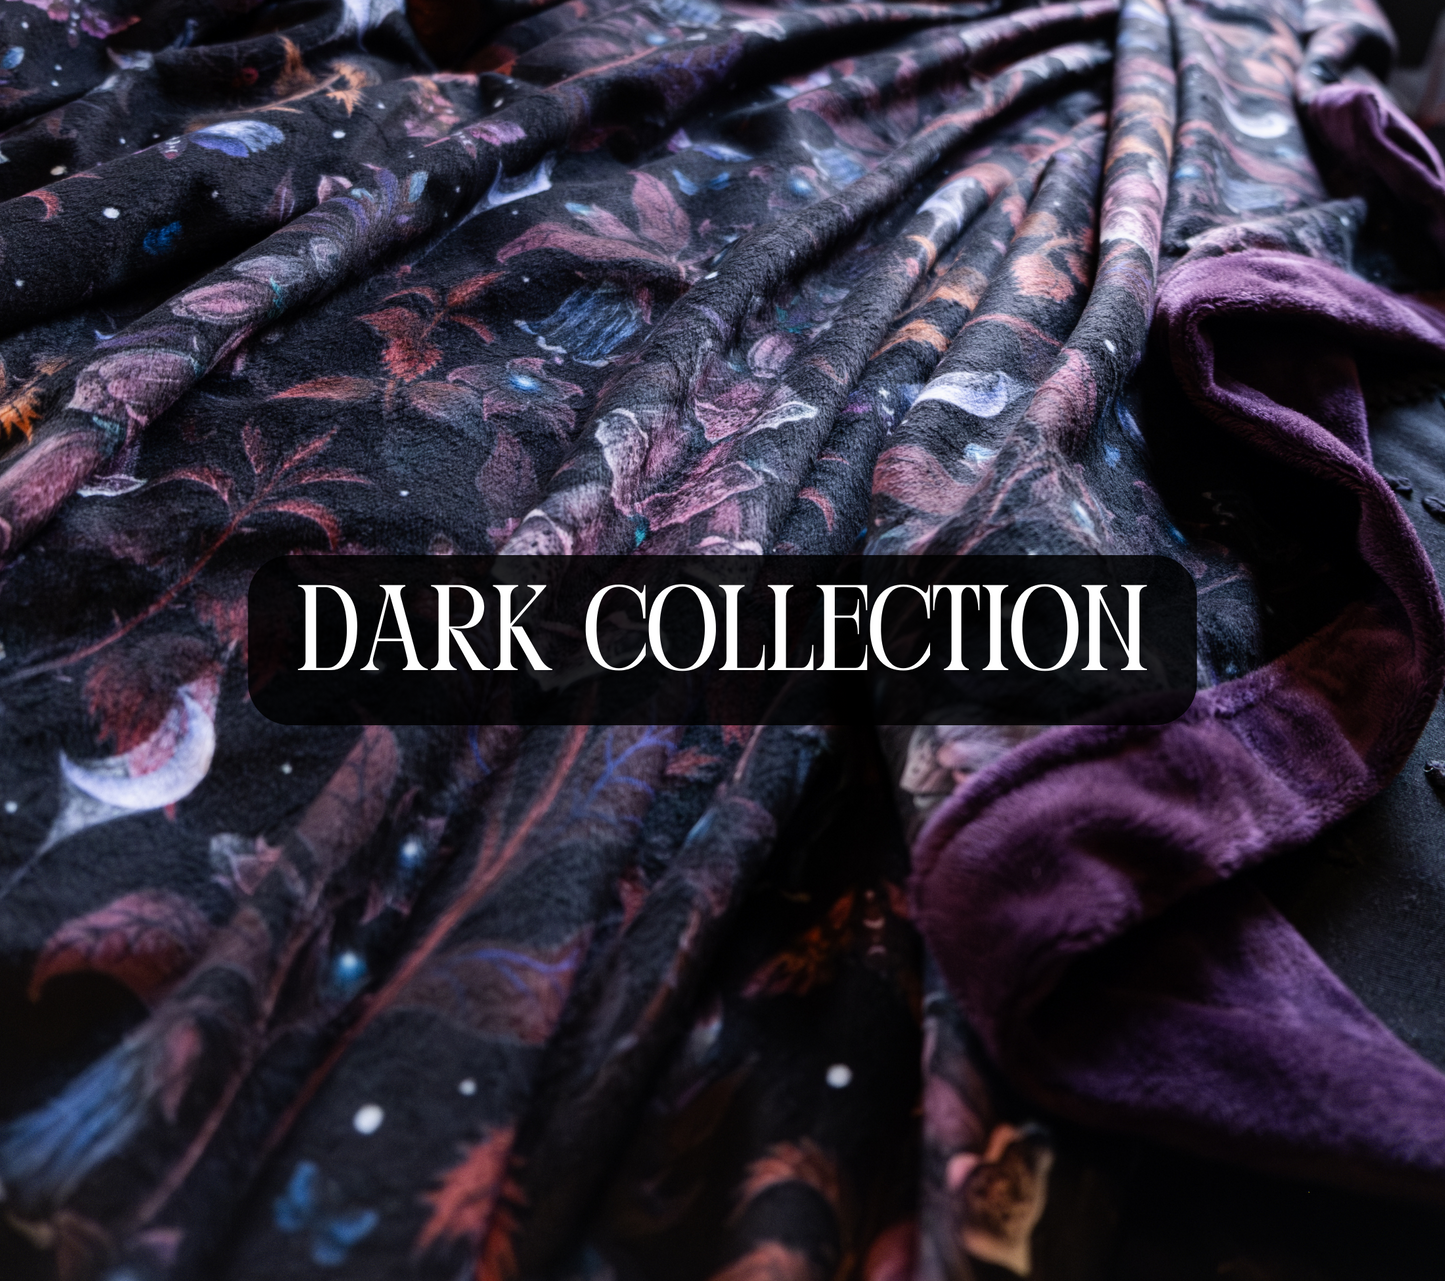 Custom Grownup Blankies - Dark Collection